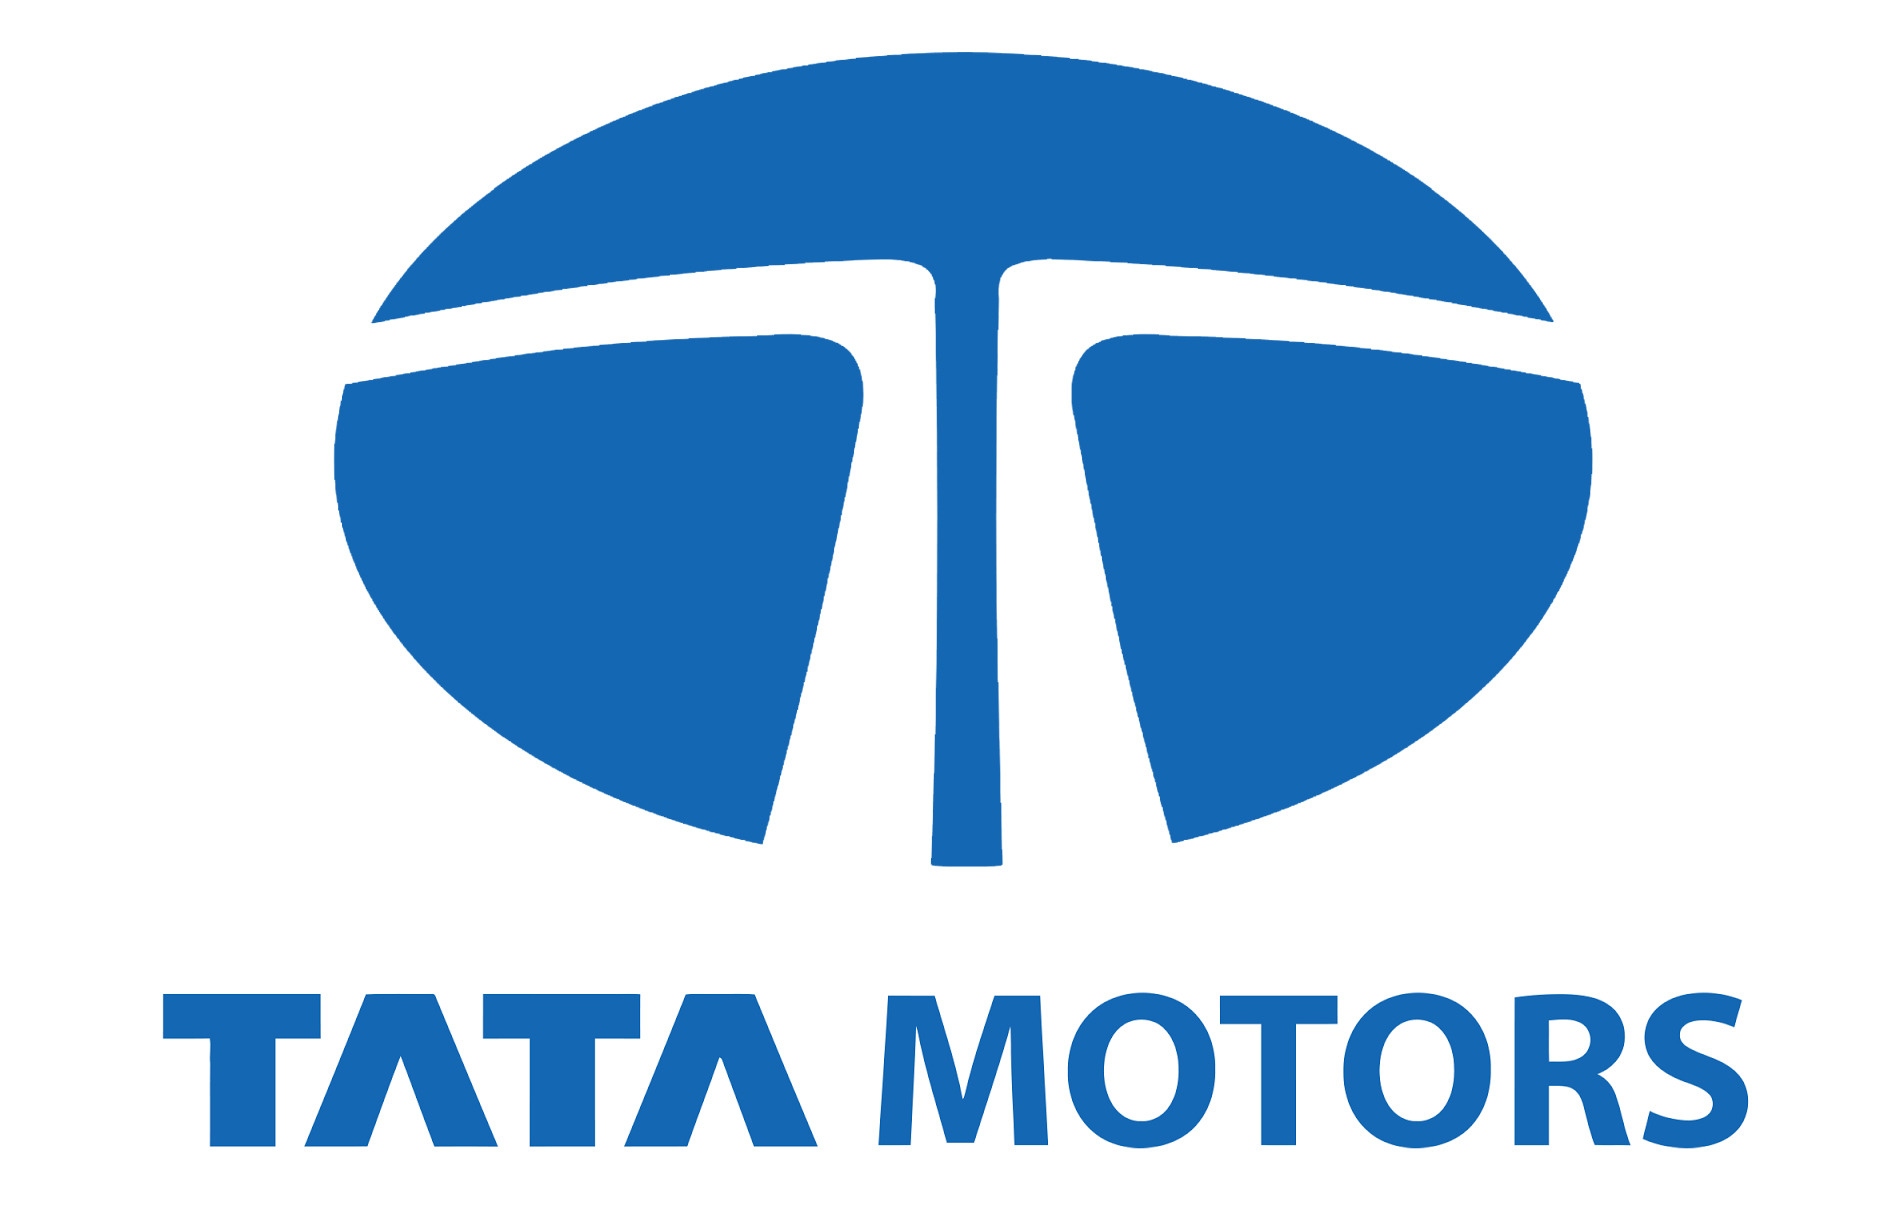 MAC Vehicles Pvt Ltd - Tata Motors - Logo